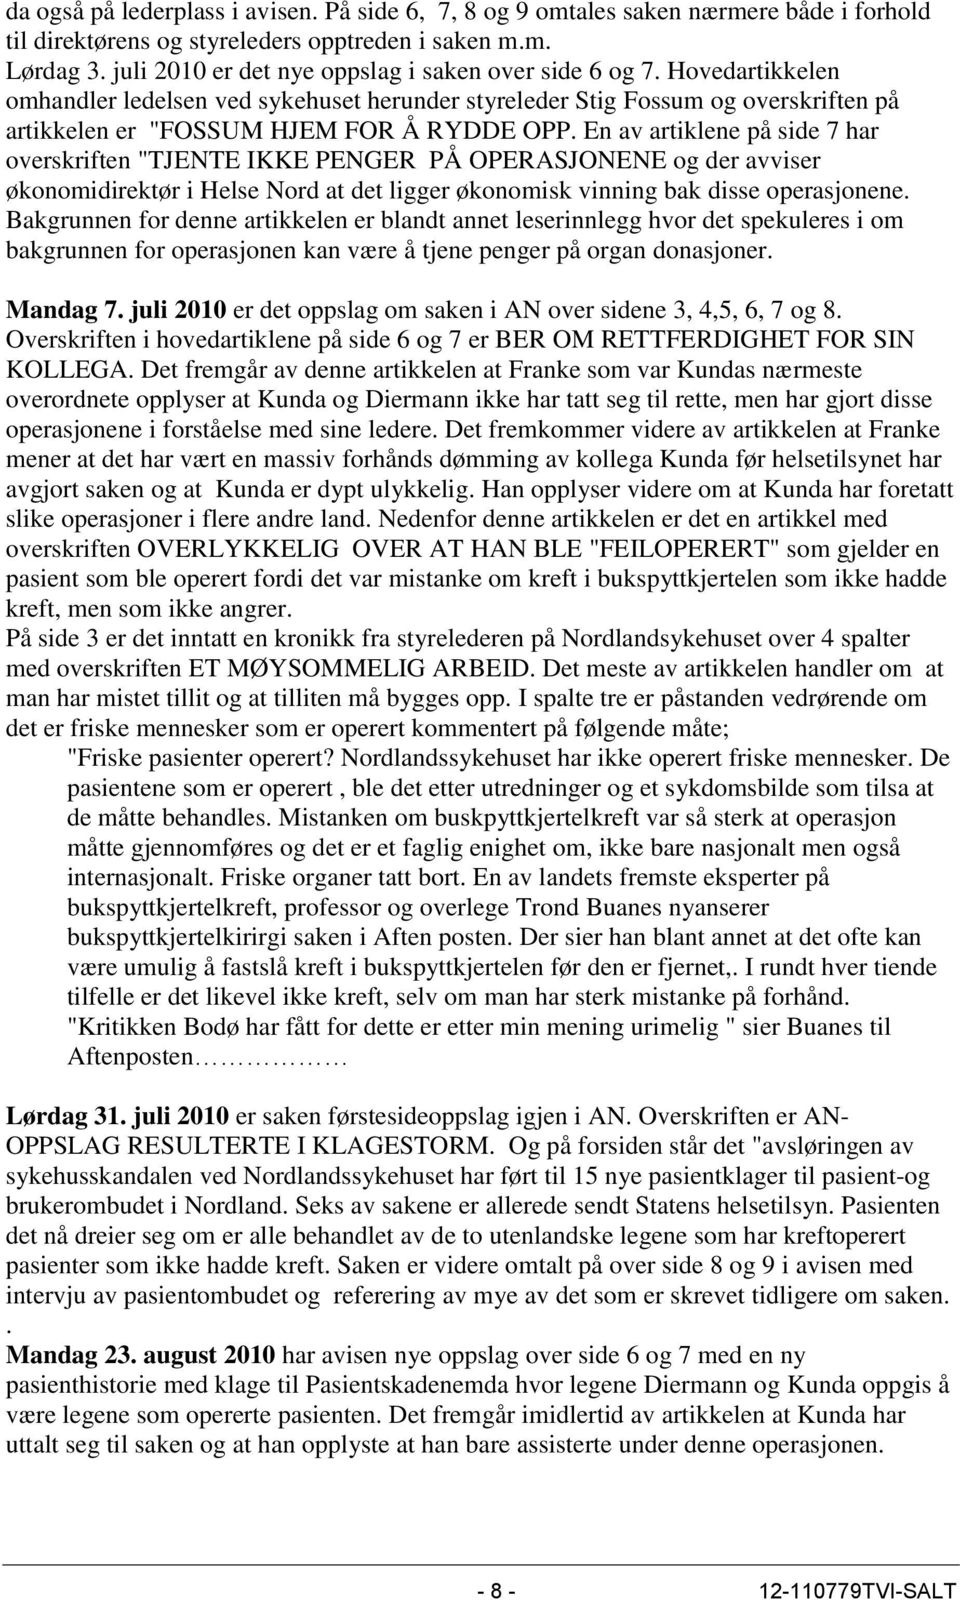 En av artiklene på side 7 har overskriften "TJENTE IKKE PENGER PÅ OPERASJONENE og der avviser økonomidirektør i Helse Nord at det ligger økonomisk vinning bak disse operasjonene.